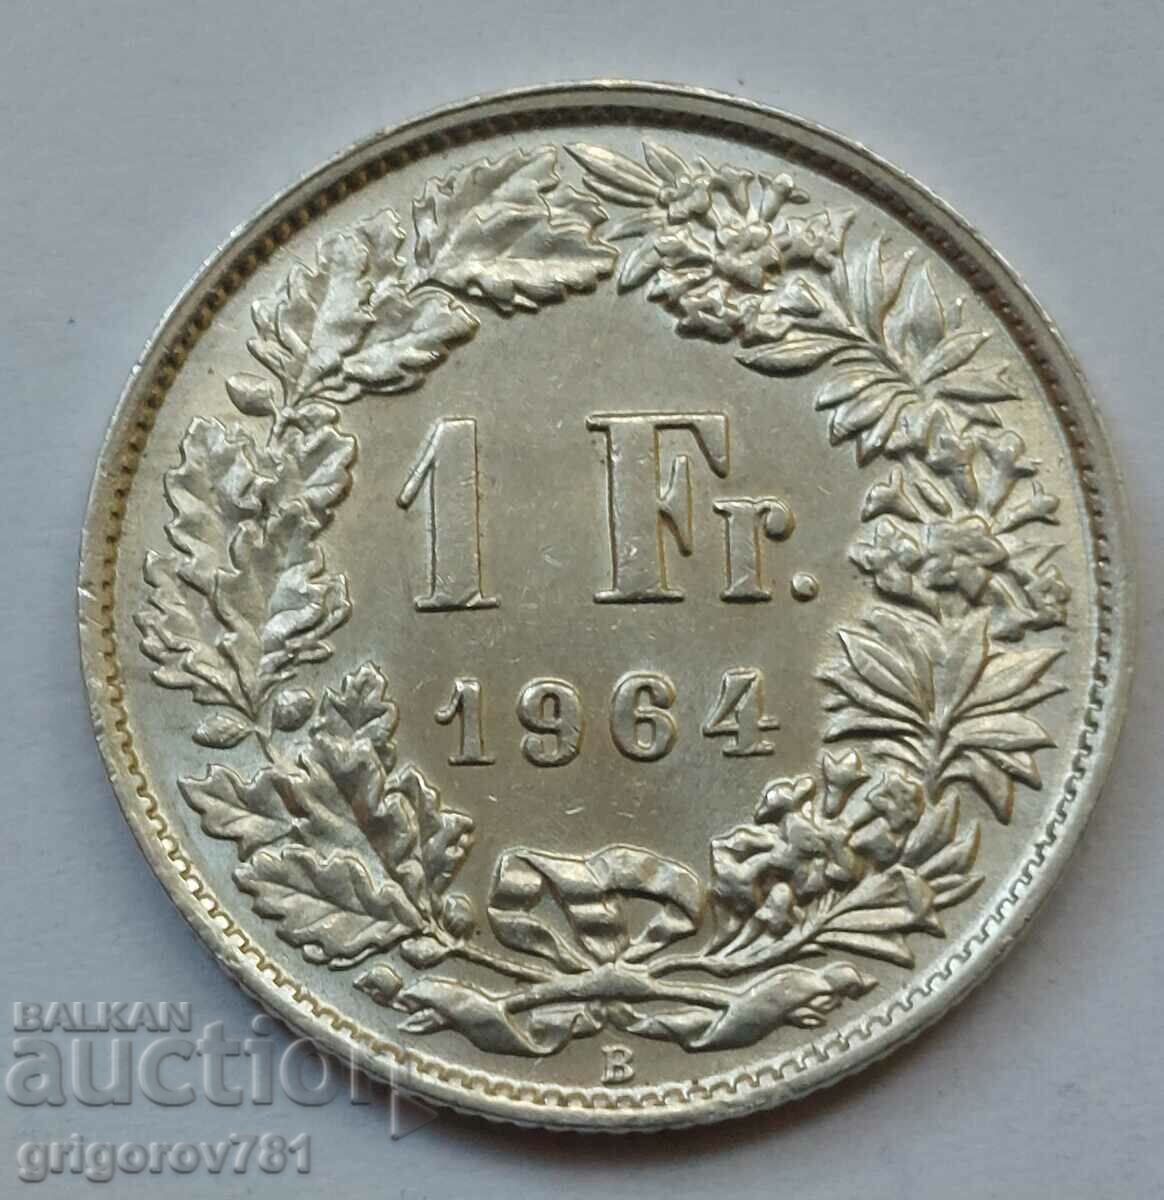 Ασημένιο 1 Φράγκο Ελβετία 1964 Β - Ασημένιο νόμισμα #3